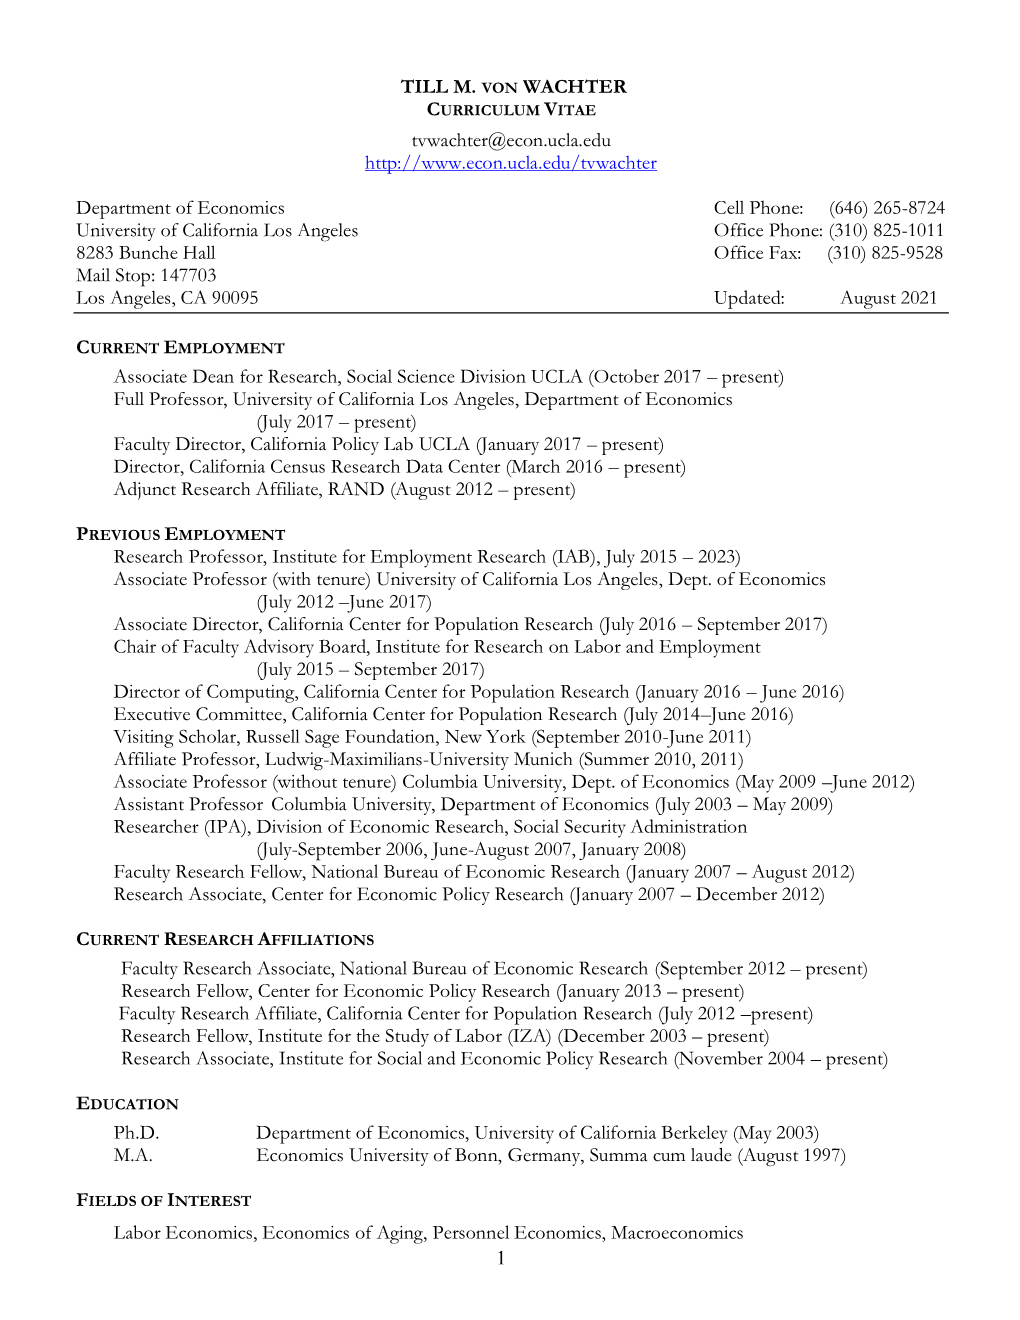 Curriculum Vitae [PDF Format]